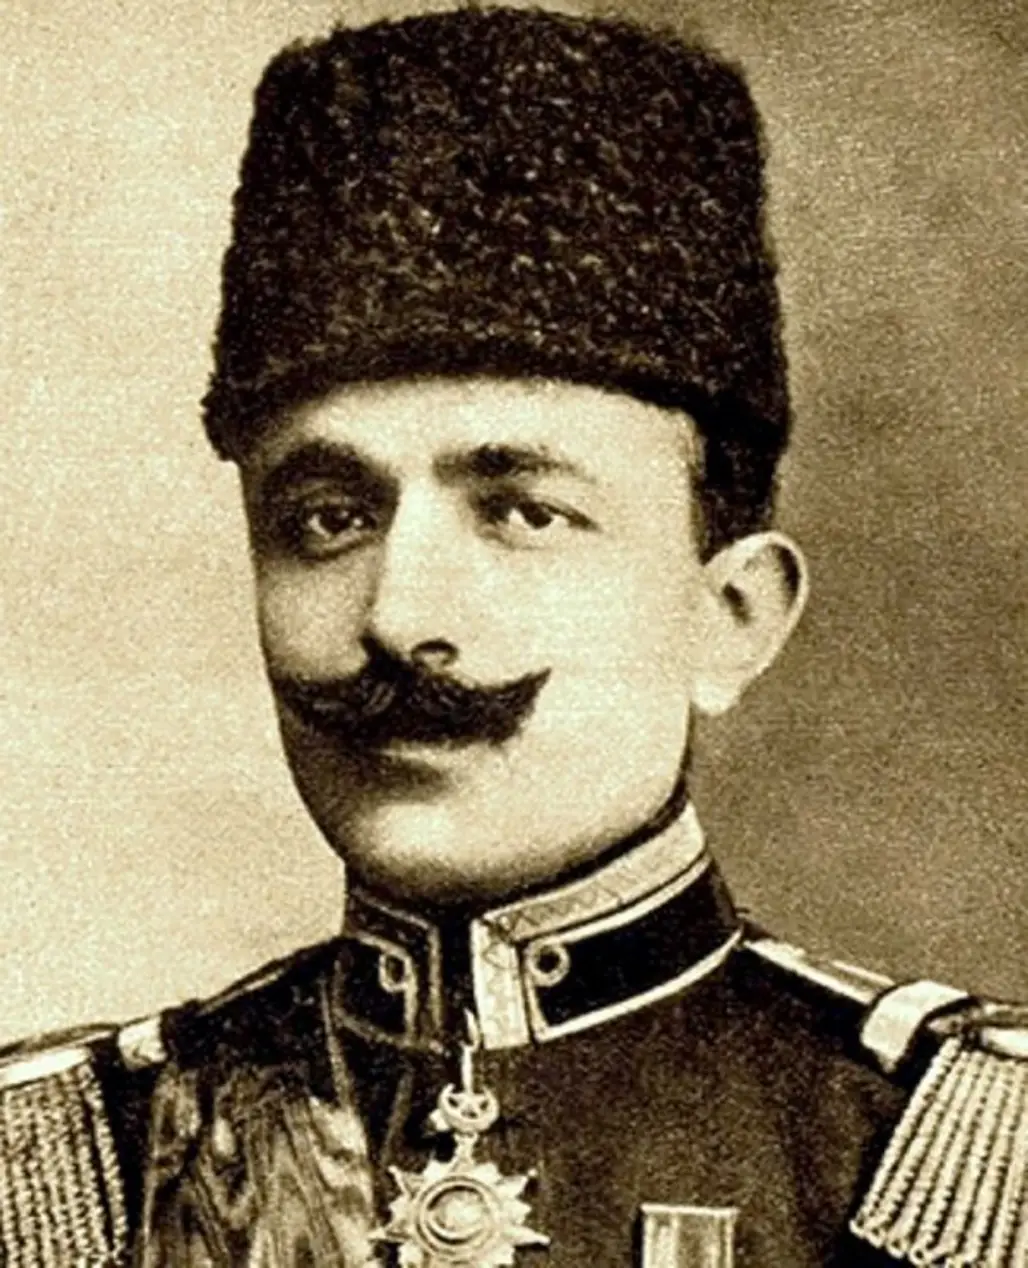 Ismail Enver Pasha